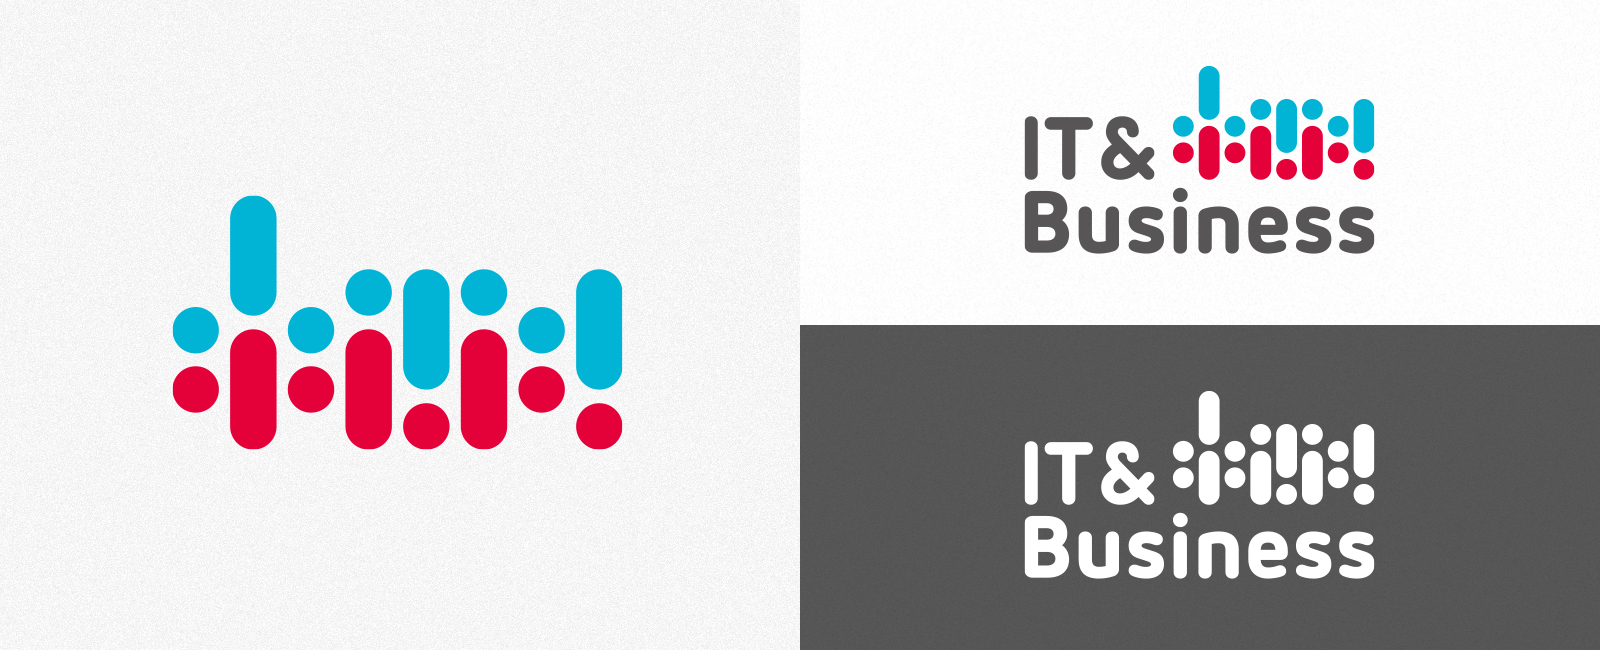 IT & Business Logo 